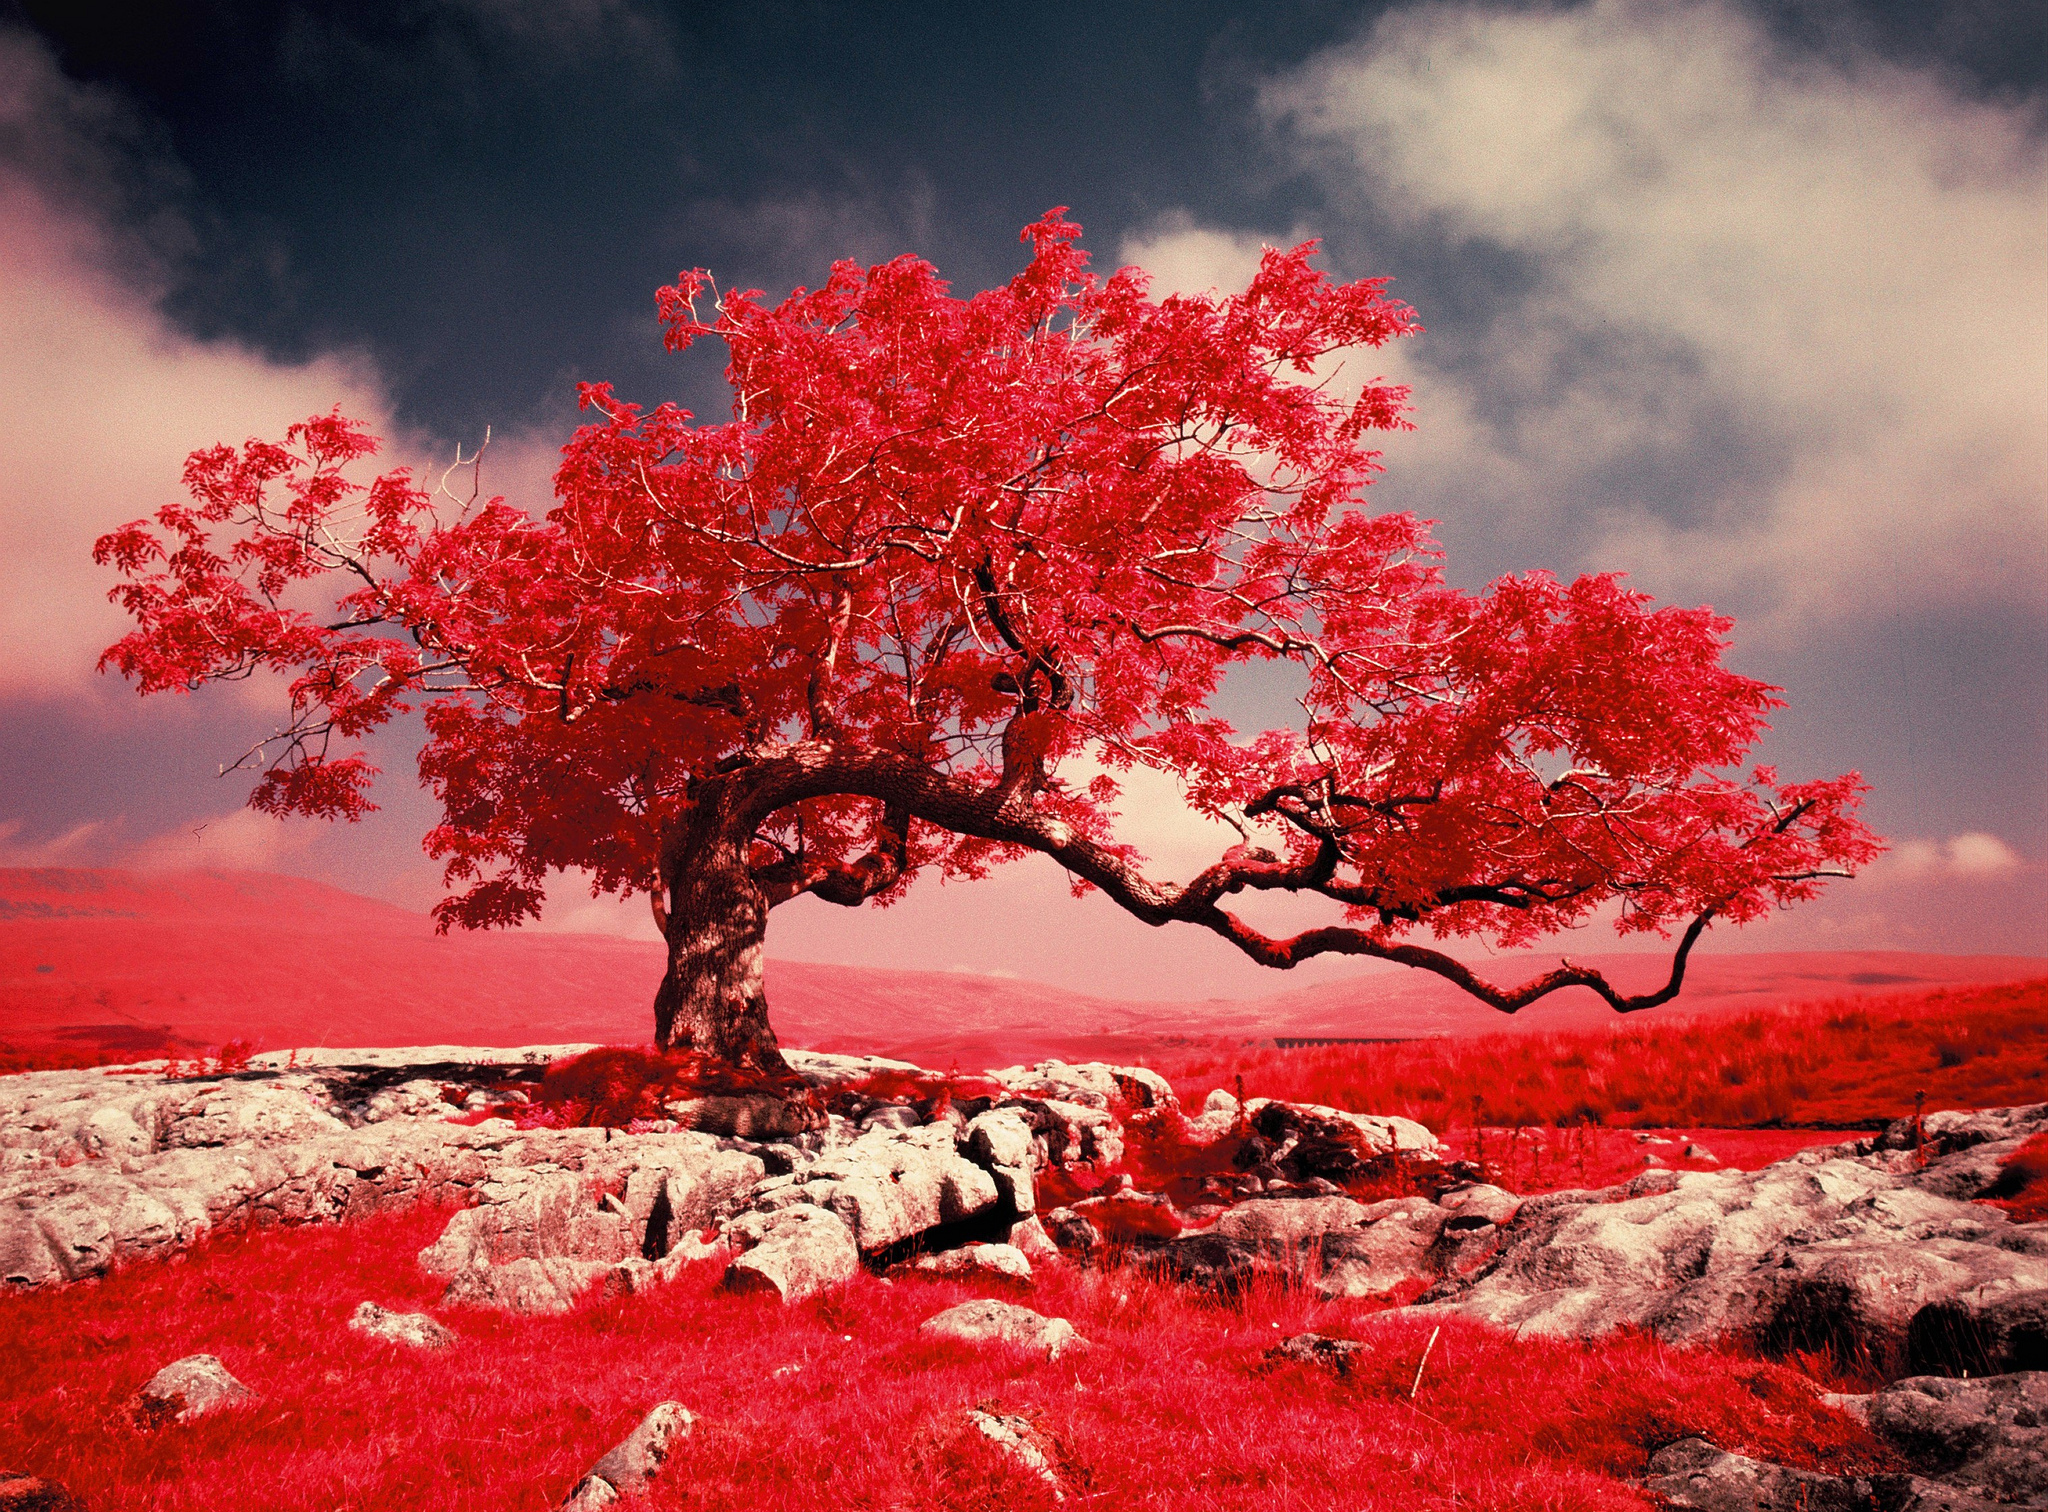 Скачать обои бесплатно Природа, Деревья, Красный, Дерево, Ландшафт, Земля/природа, Одинокое Дерево картинка на рабочий стол ПК